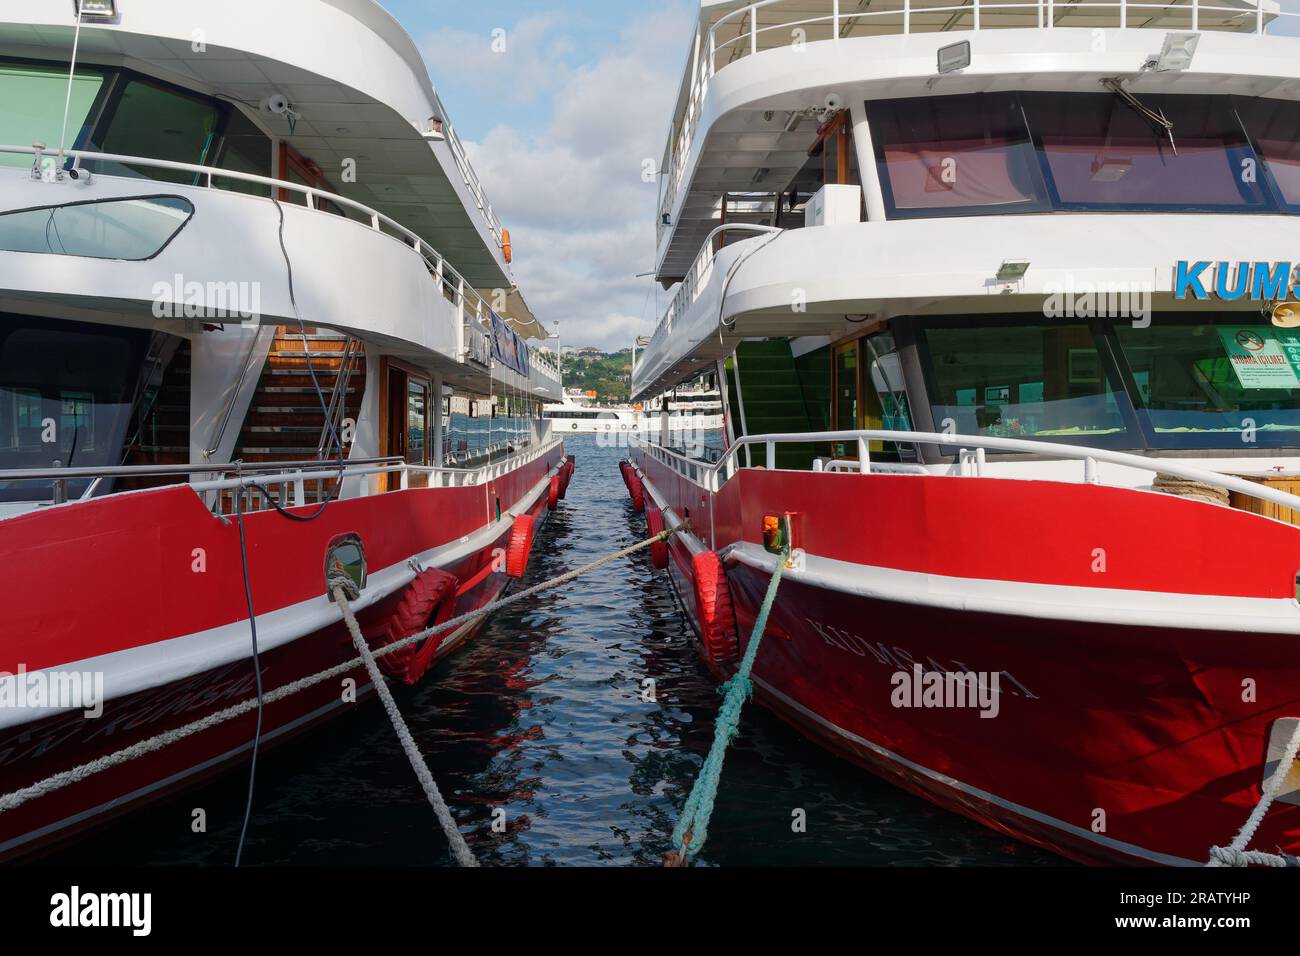 Traghetti passeggeri rossi e bianchi ormeggiati sul Mare del Bosforo a Istanbul, Turchia, mentre un'altra barca passa sullo sfondo. Foto Stock